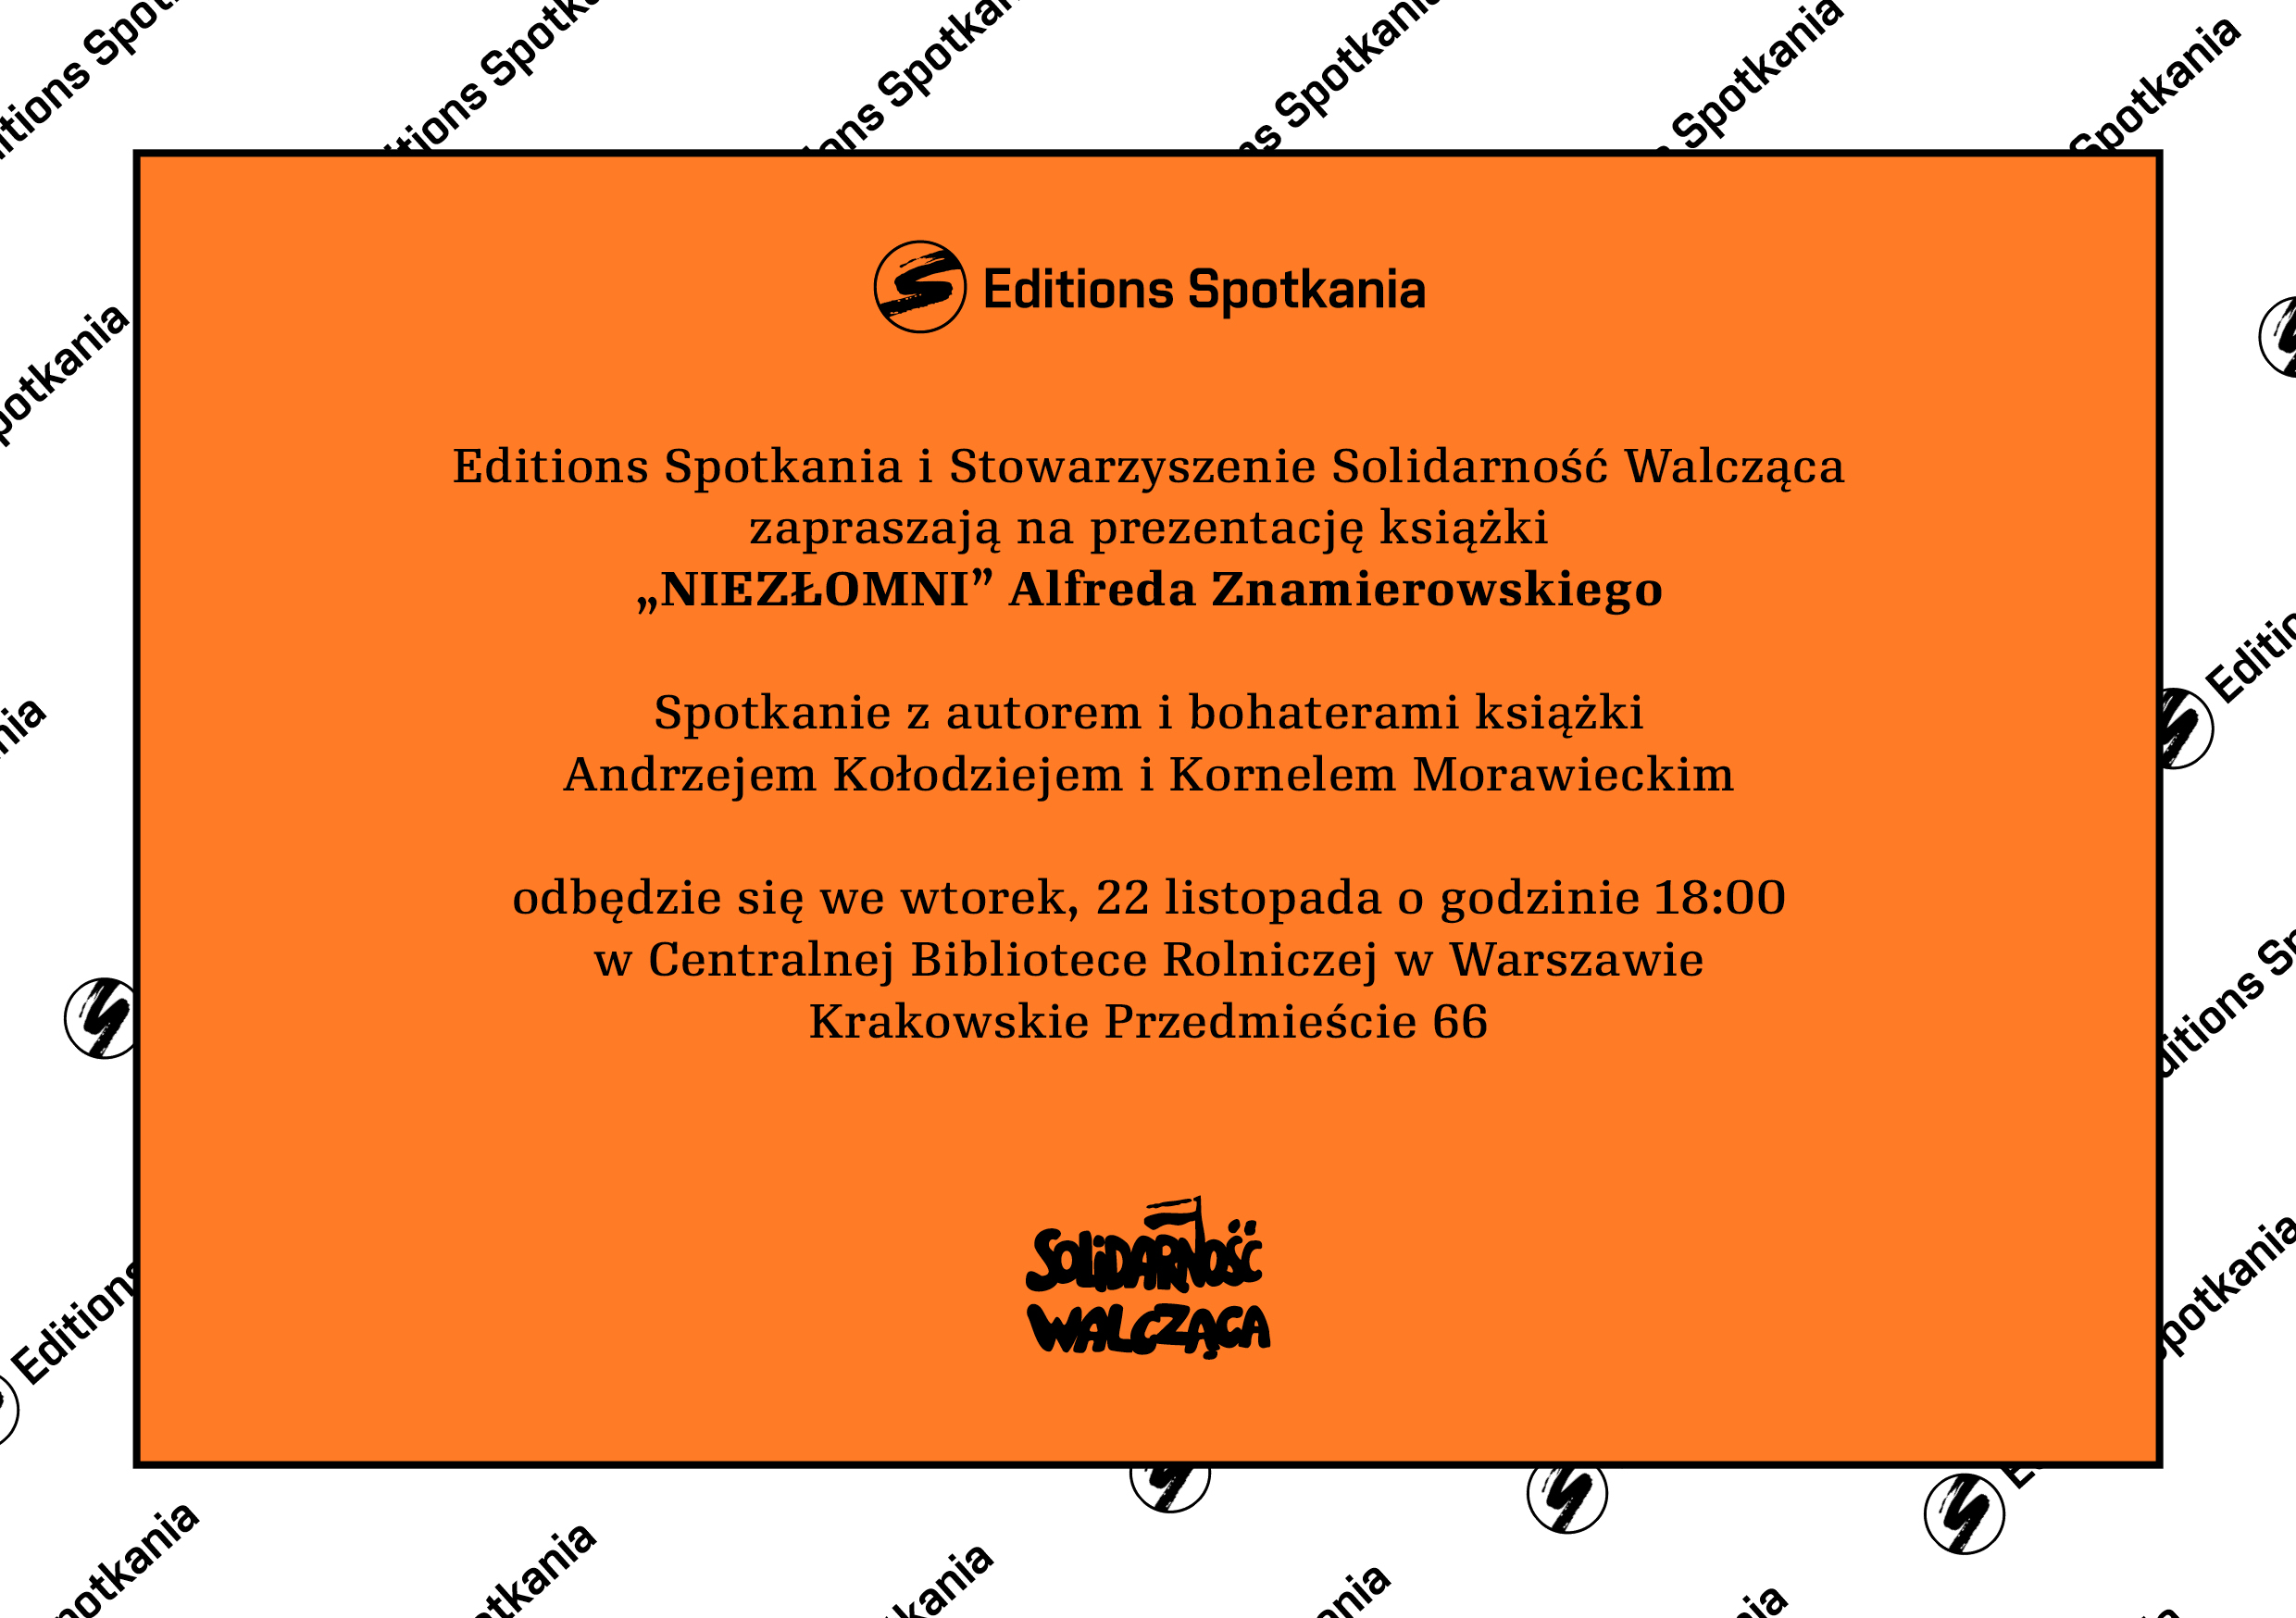 Editions Spotkania zaproszenie Niezlomni 161103